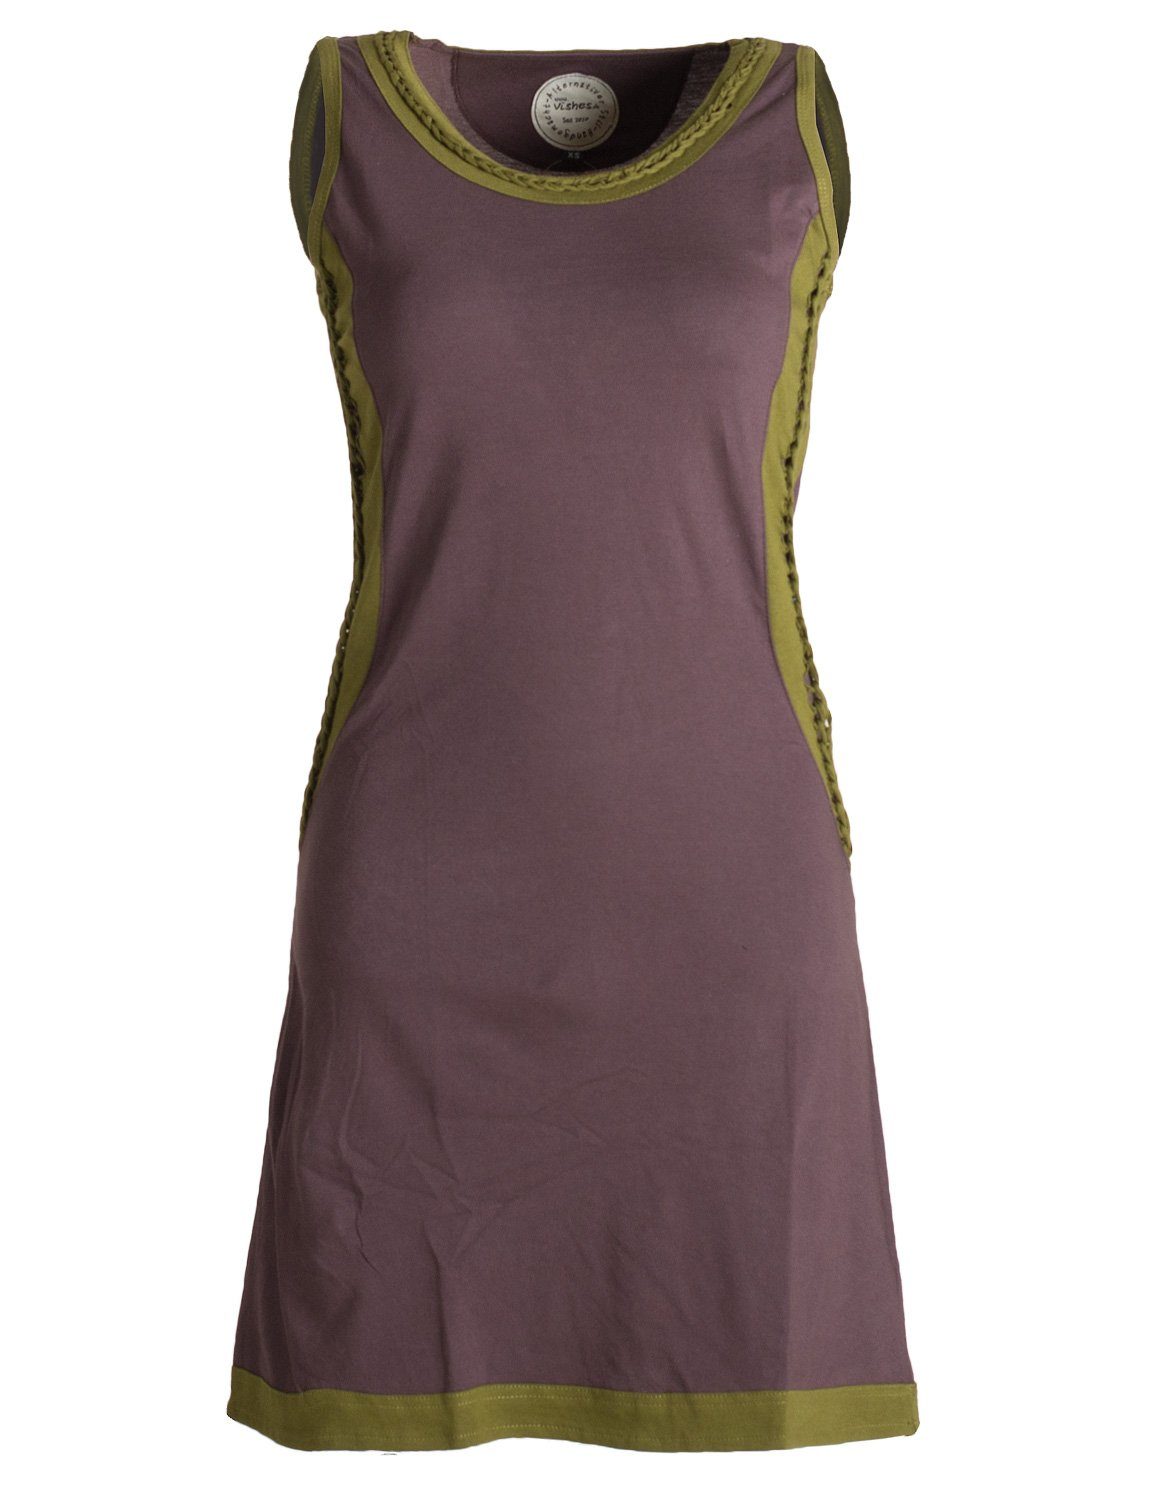 Vishes Sommerkleid Ärmelloses Kleid mit geflochtenen Einsätzen Tunika, Hippie, Ethno, Goa, Boho Style braun